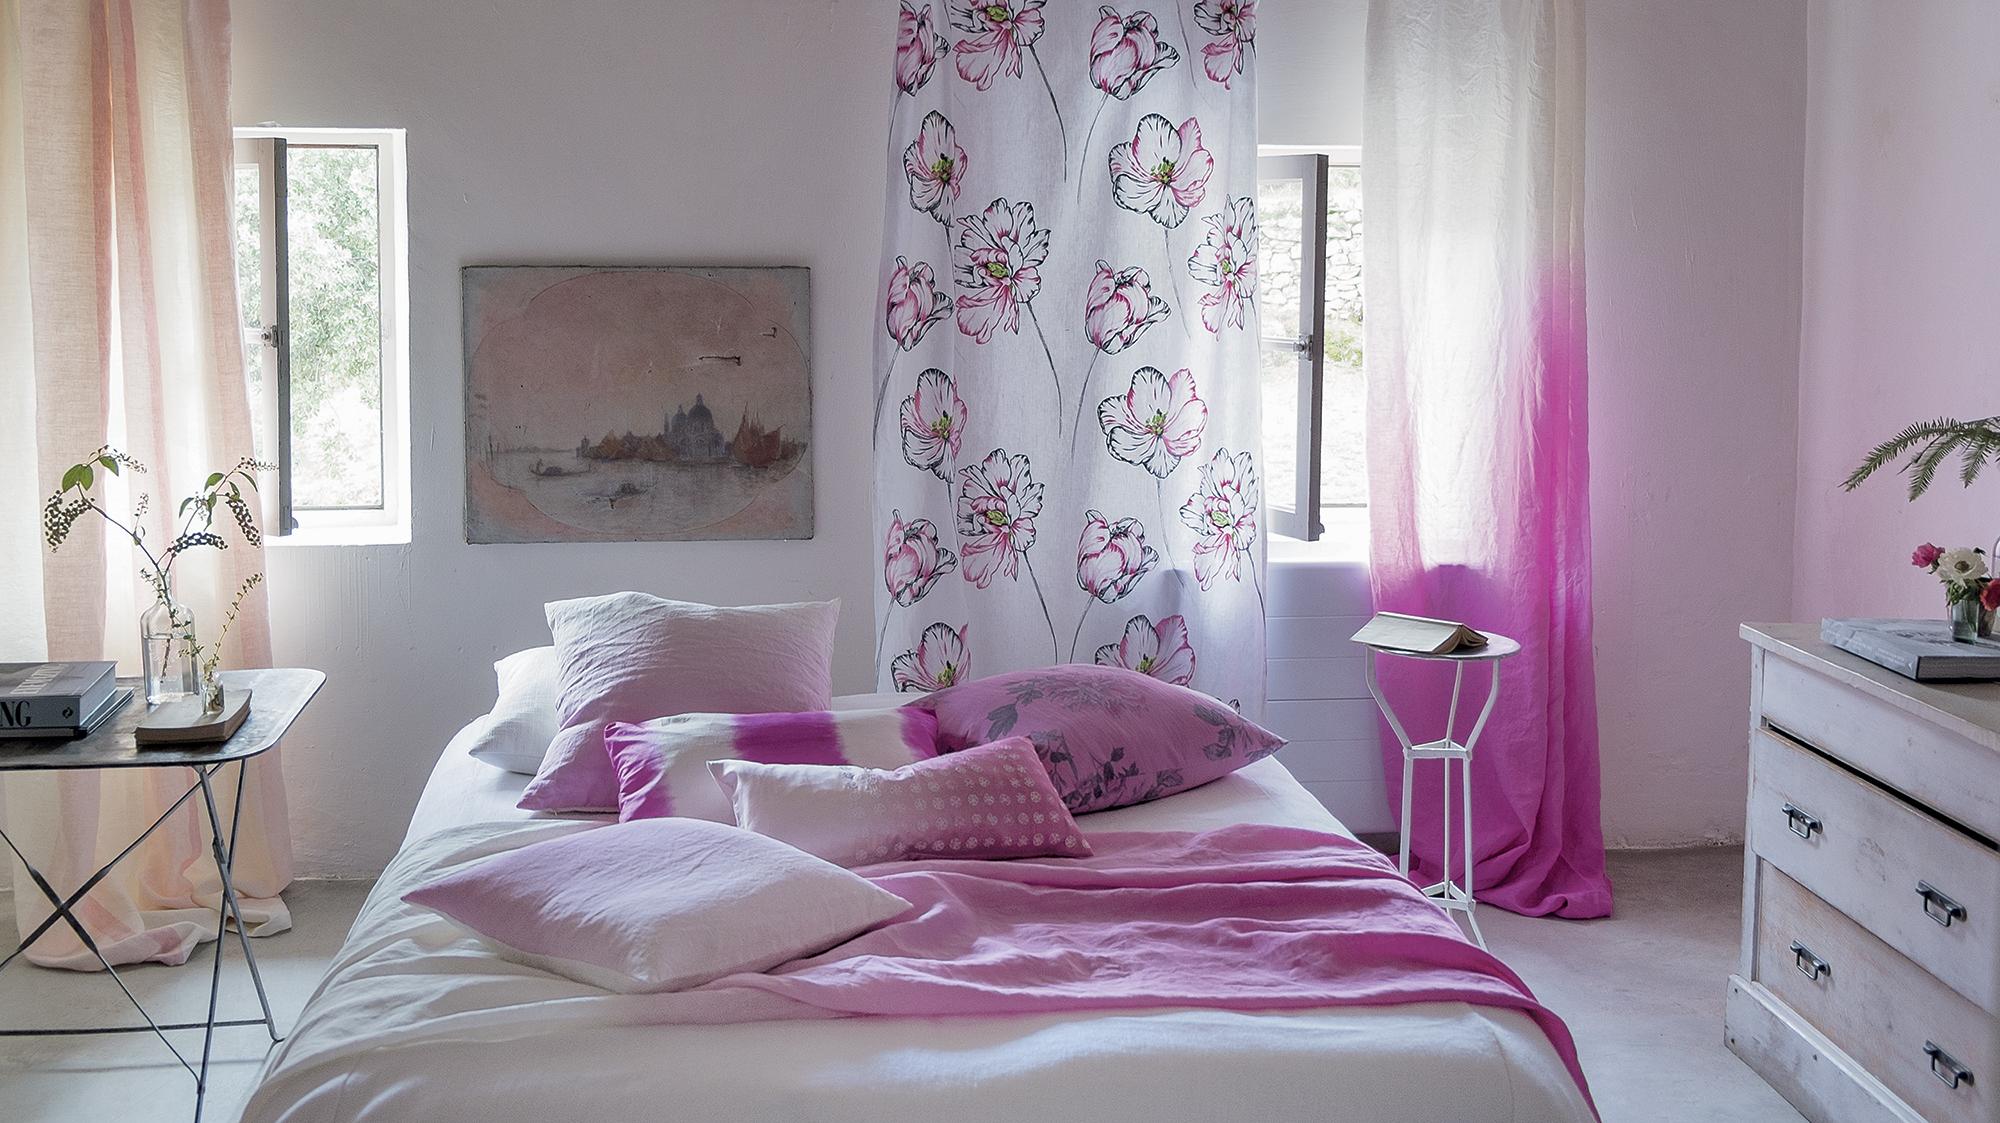 Sanftes Pink im Schlafzimmer #bett ©Designers Guild